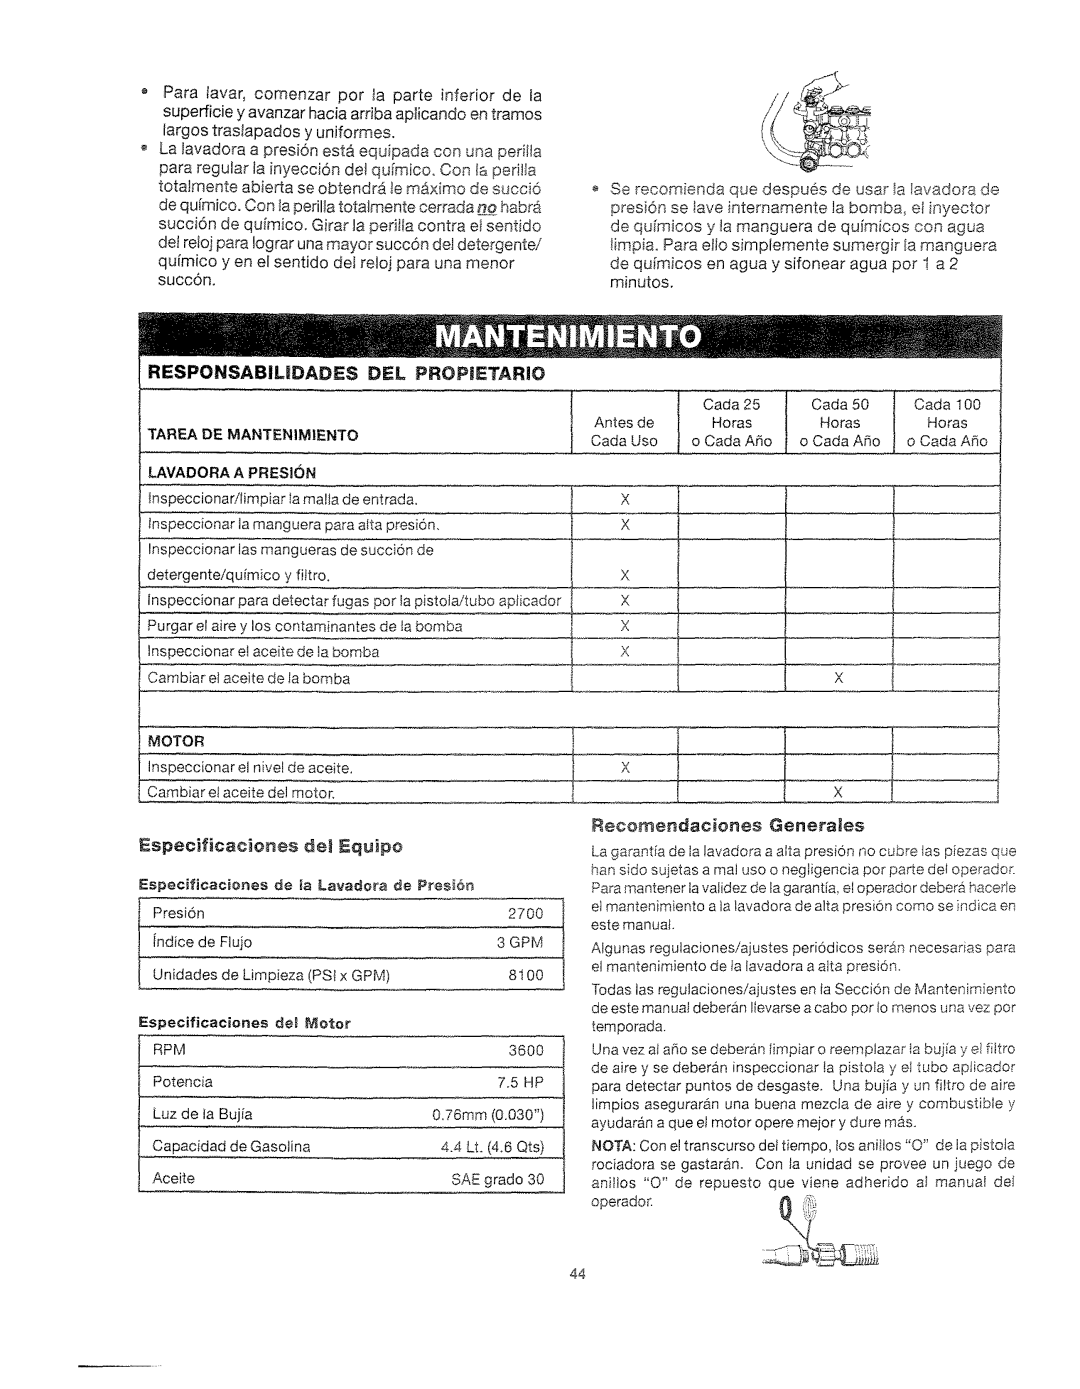 Craftsman 919.762500 manual Responsabil|Dades, DEL PROPtlETARIO, Tarea De Mantenimiento, _a Lavadora de, P_es_6_ 